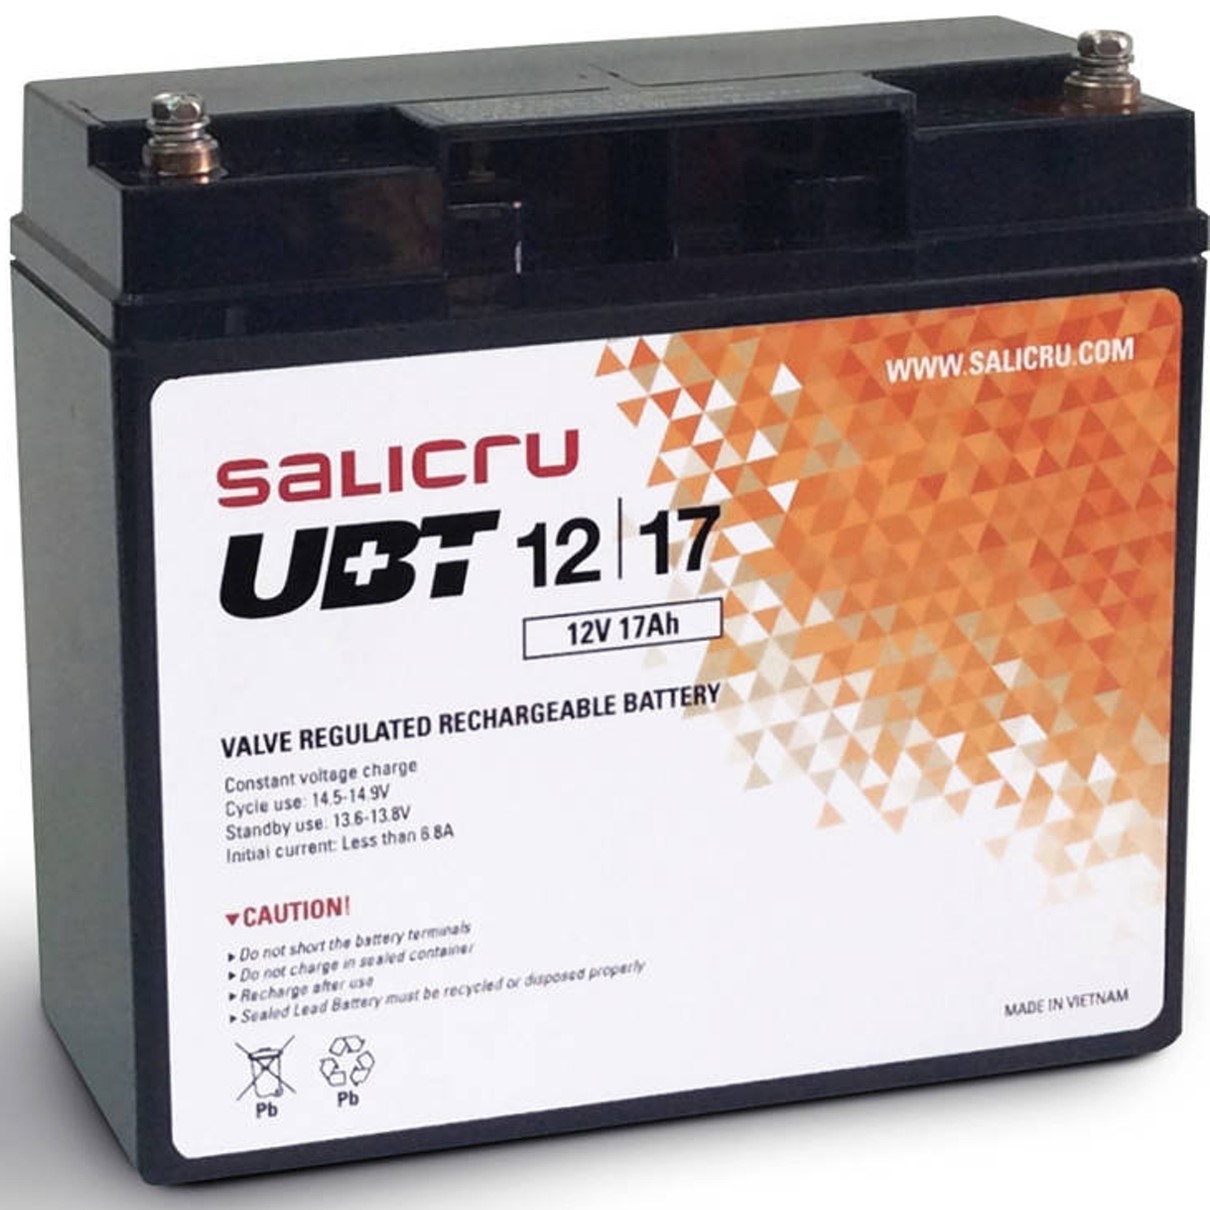 Bateria agm salicru compatible para sais 17ah 12v